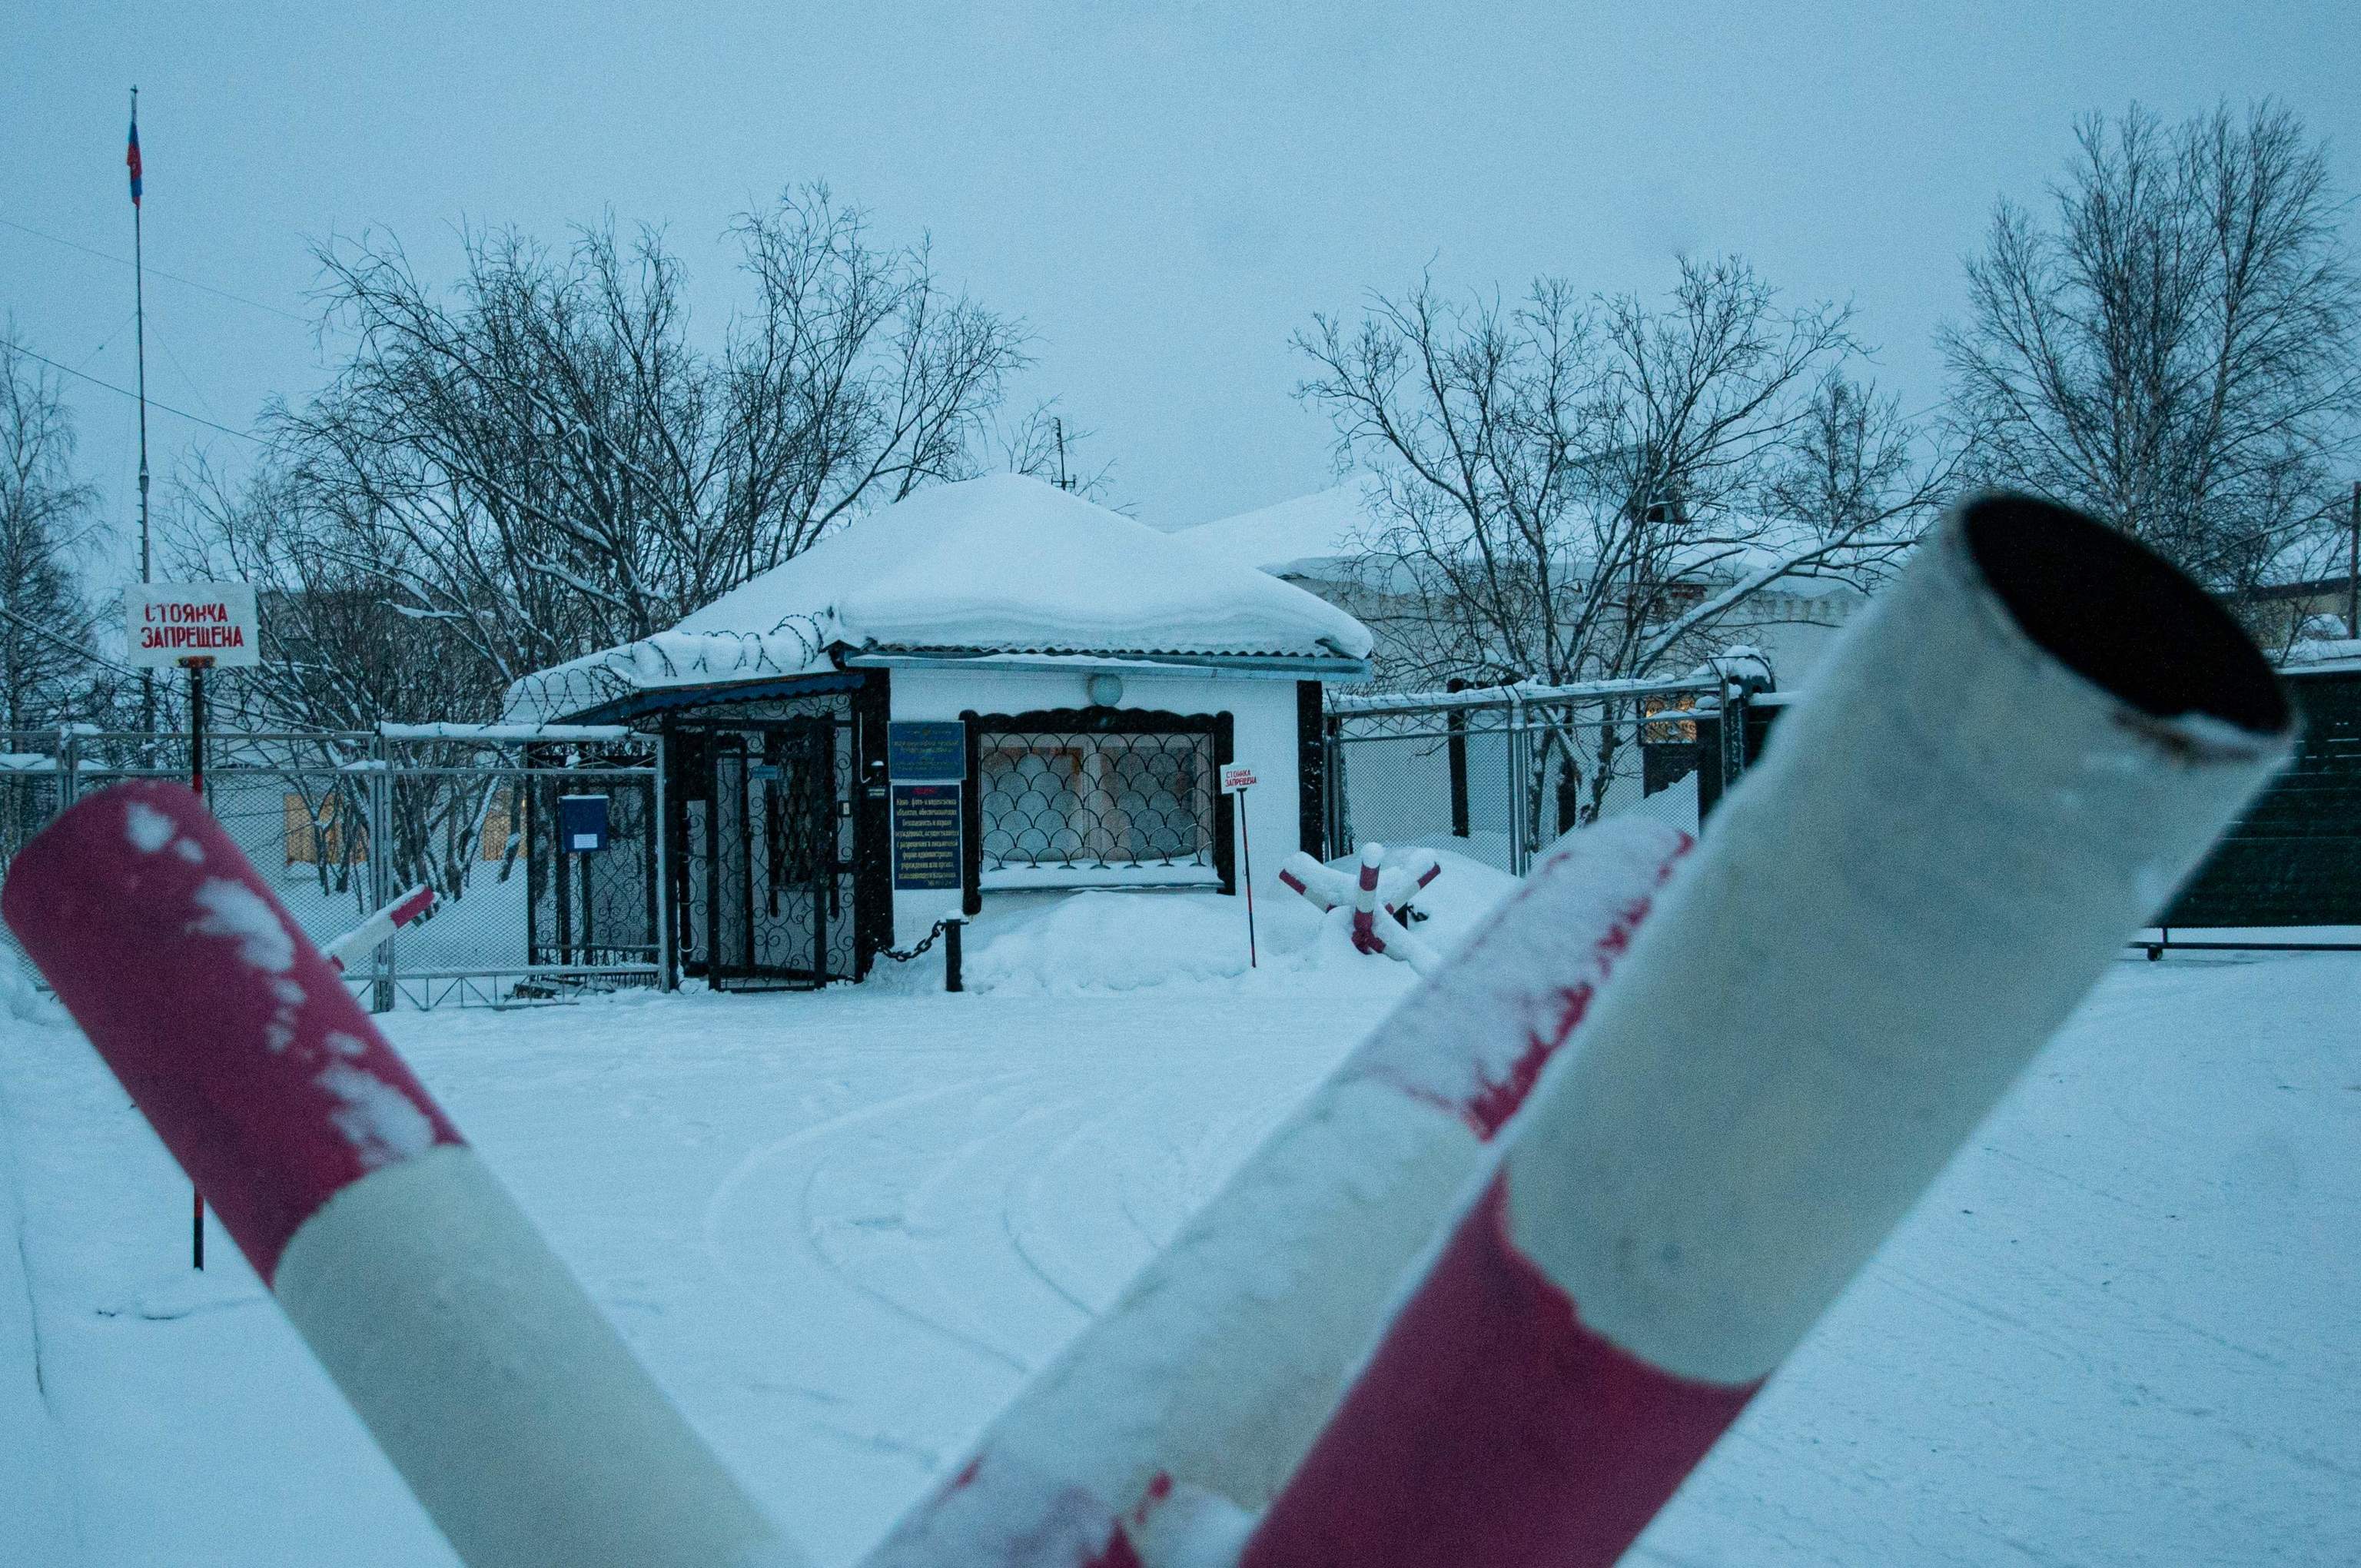 La prisión, situada en la región ártica, en una imagen tomada el pasado enero.